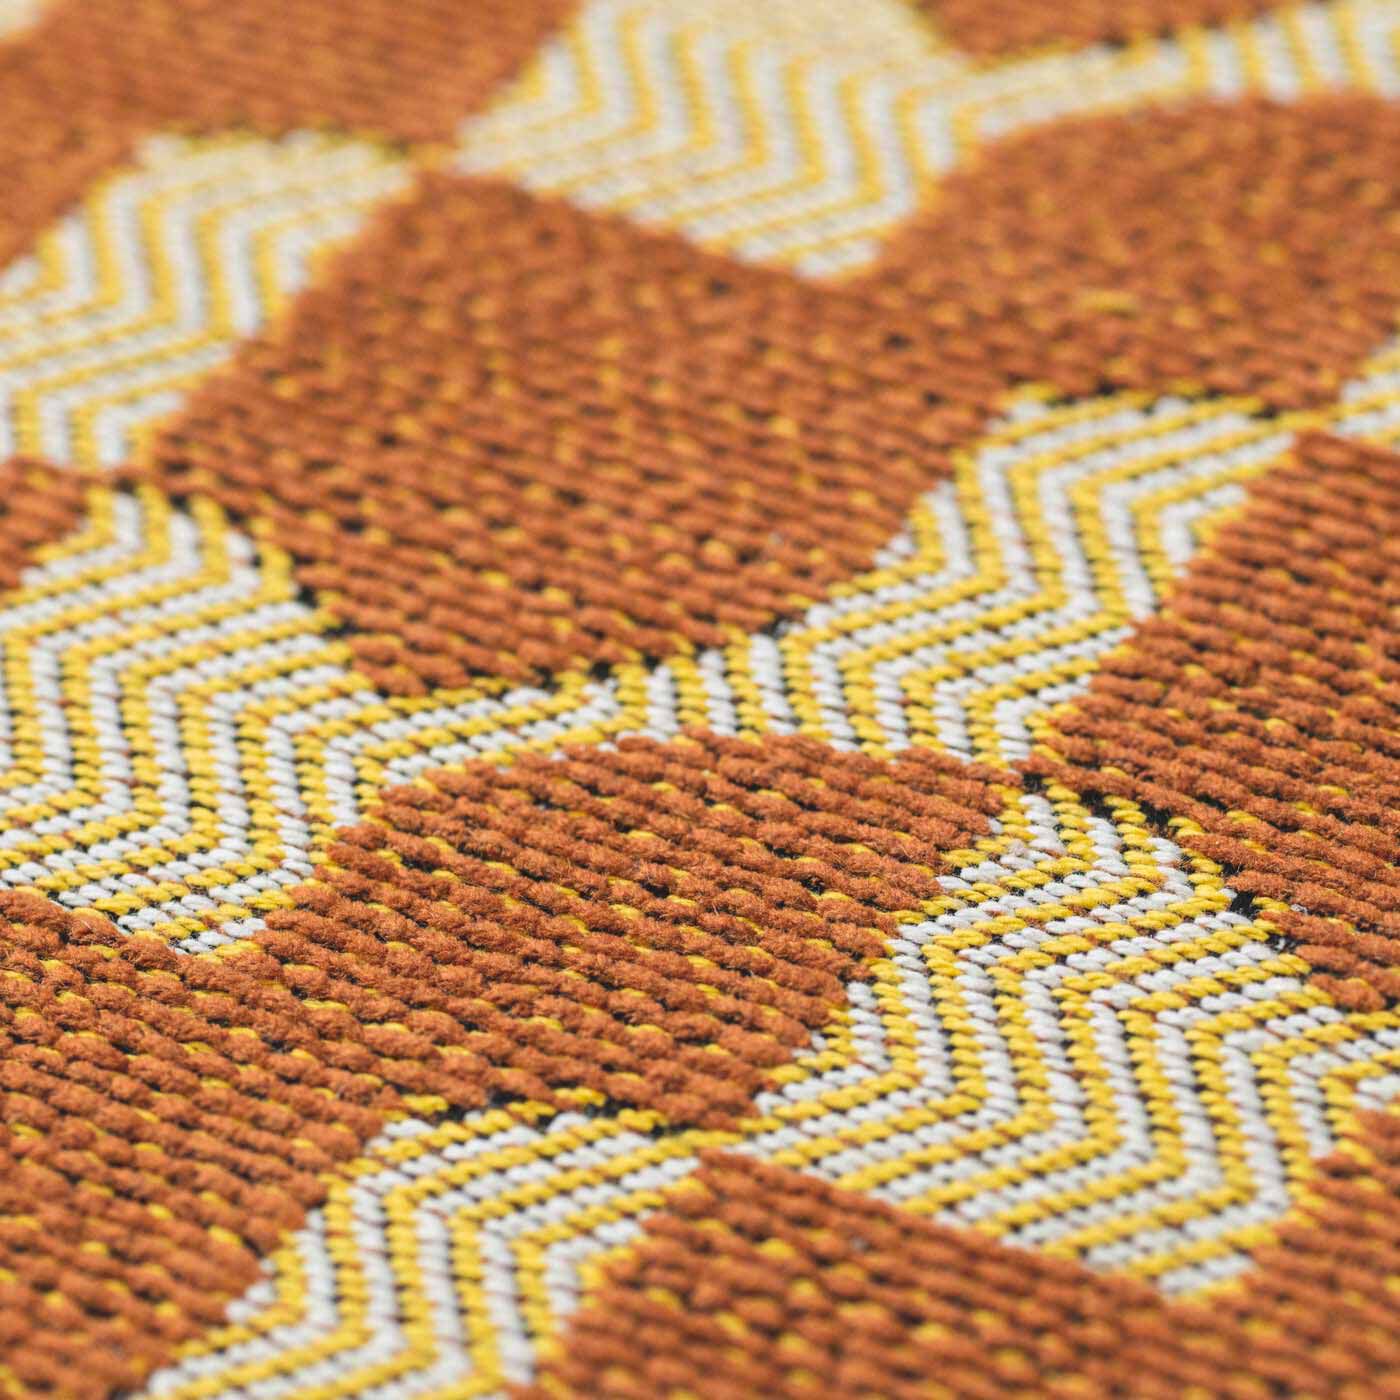 ＆Stories|テキスタイルデザイナーと家具職人が作った 播州ジャカード織のスツール〈レモンティー色〉|このスツールのために、世界的に活躍されるテキスタイルデザイナー・梶原加奈子さんへ新たにデザインを依頼し、椅子の張り地用の素材で織り上げました。